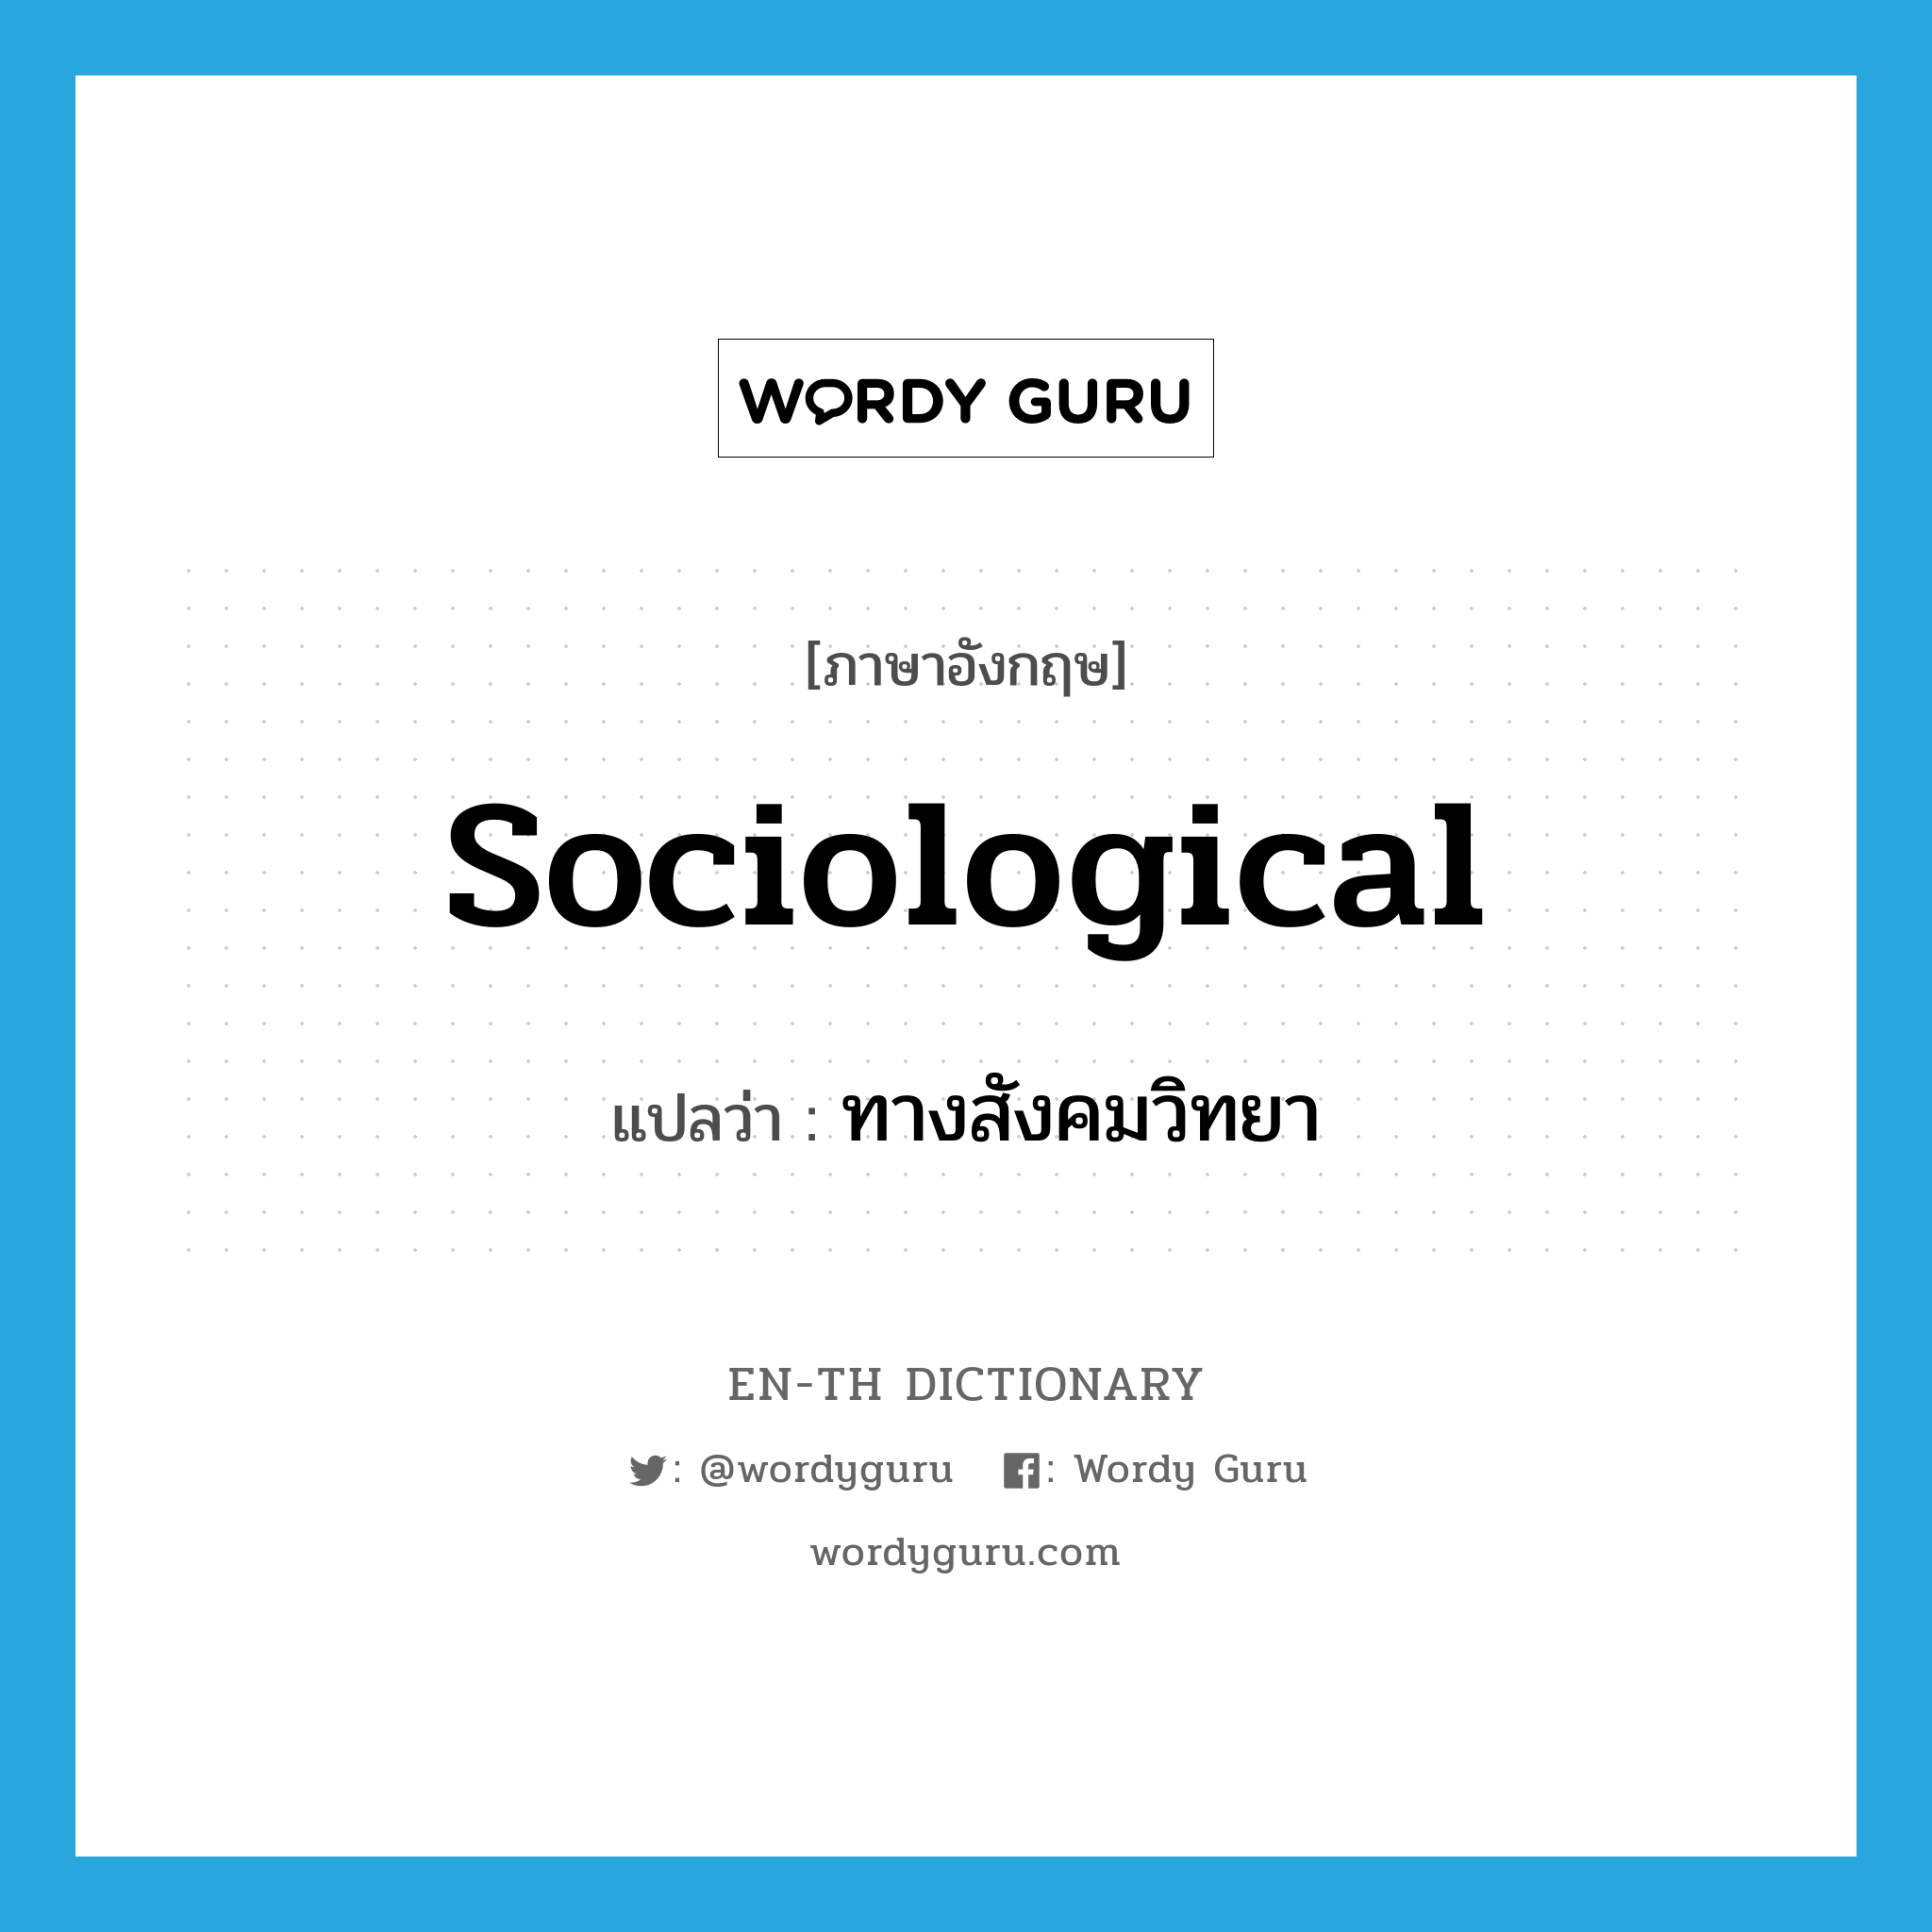 ทางสังคมวิทยา ภาษาอังกฤษ?, คำศัพท์ภาษาอังกฤษ ทางสังคมวิทยา แปลว่า sociological ประเภท ADJ หมวด ADJ